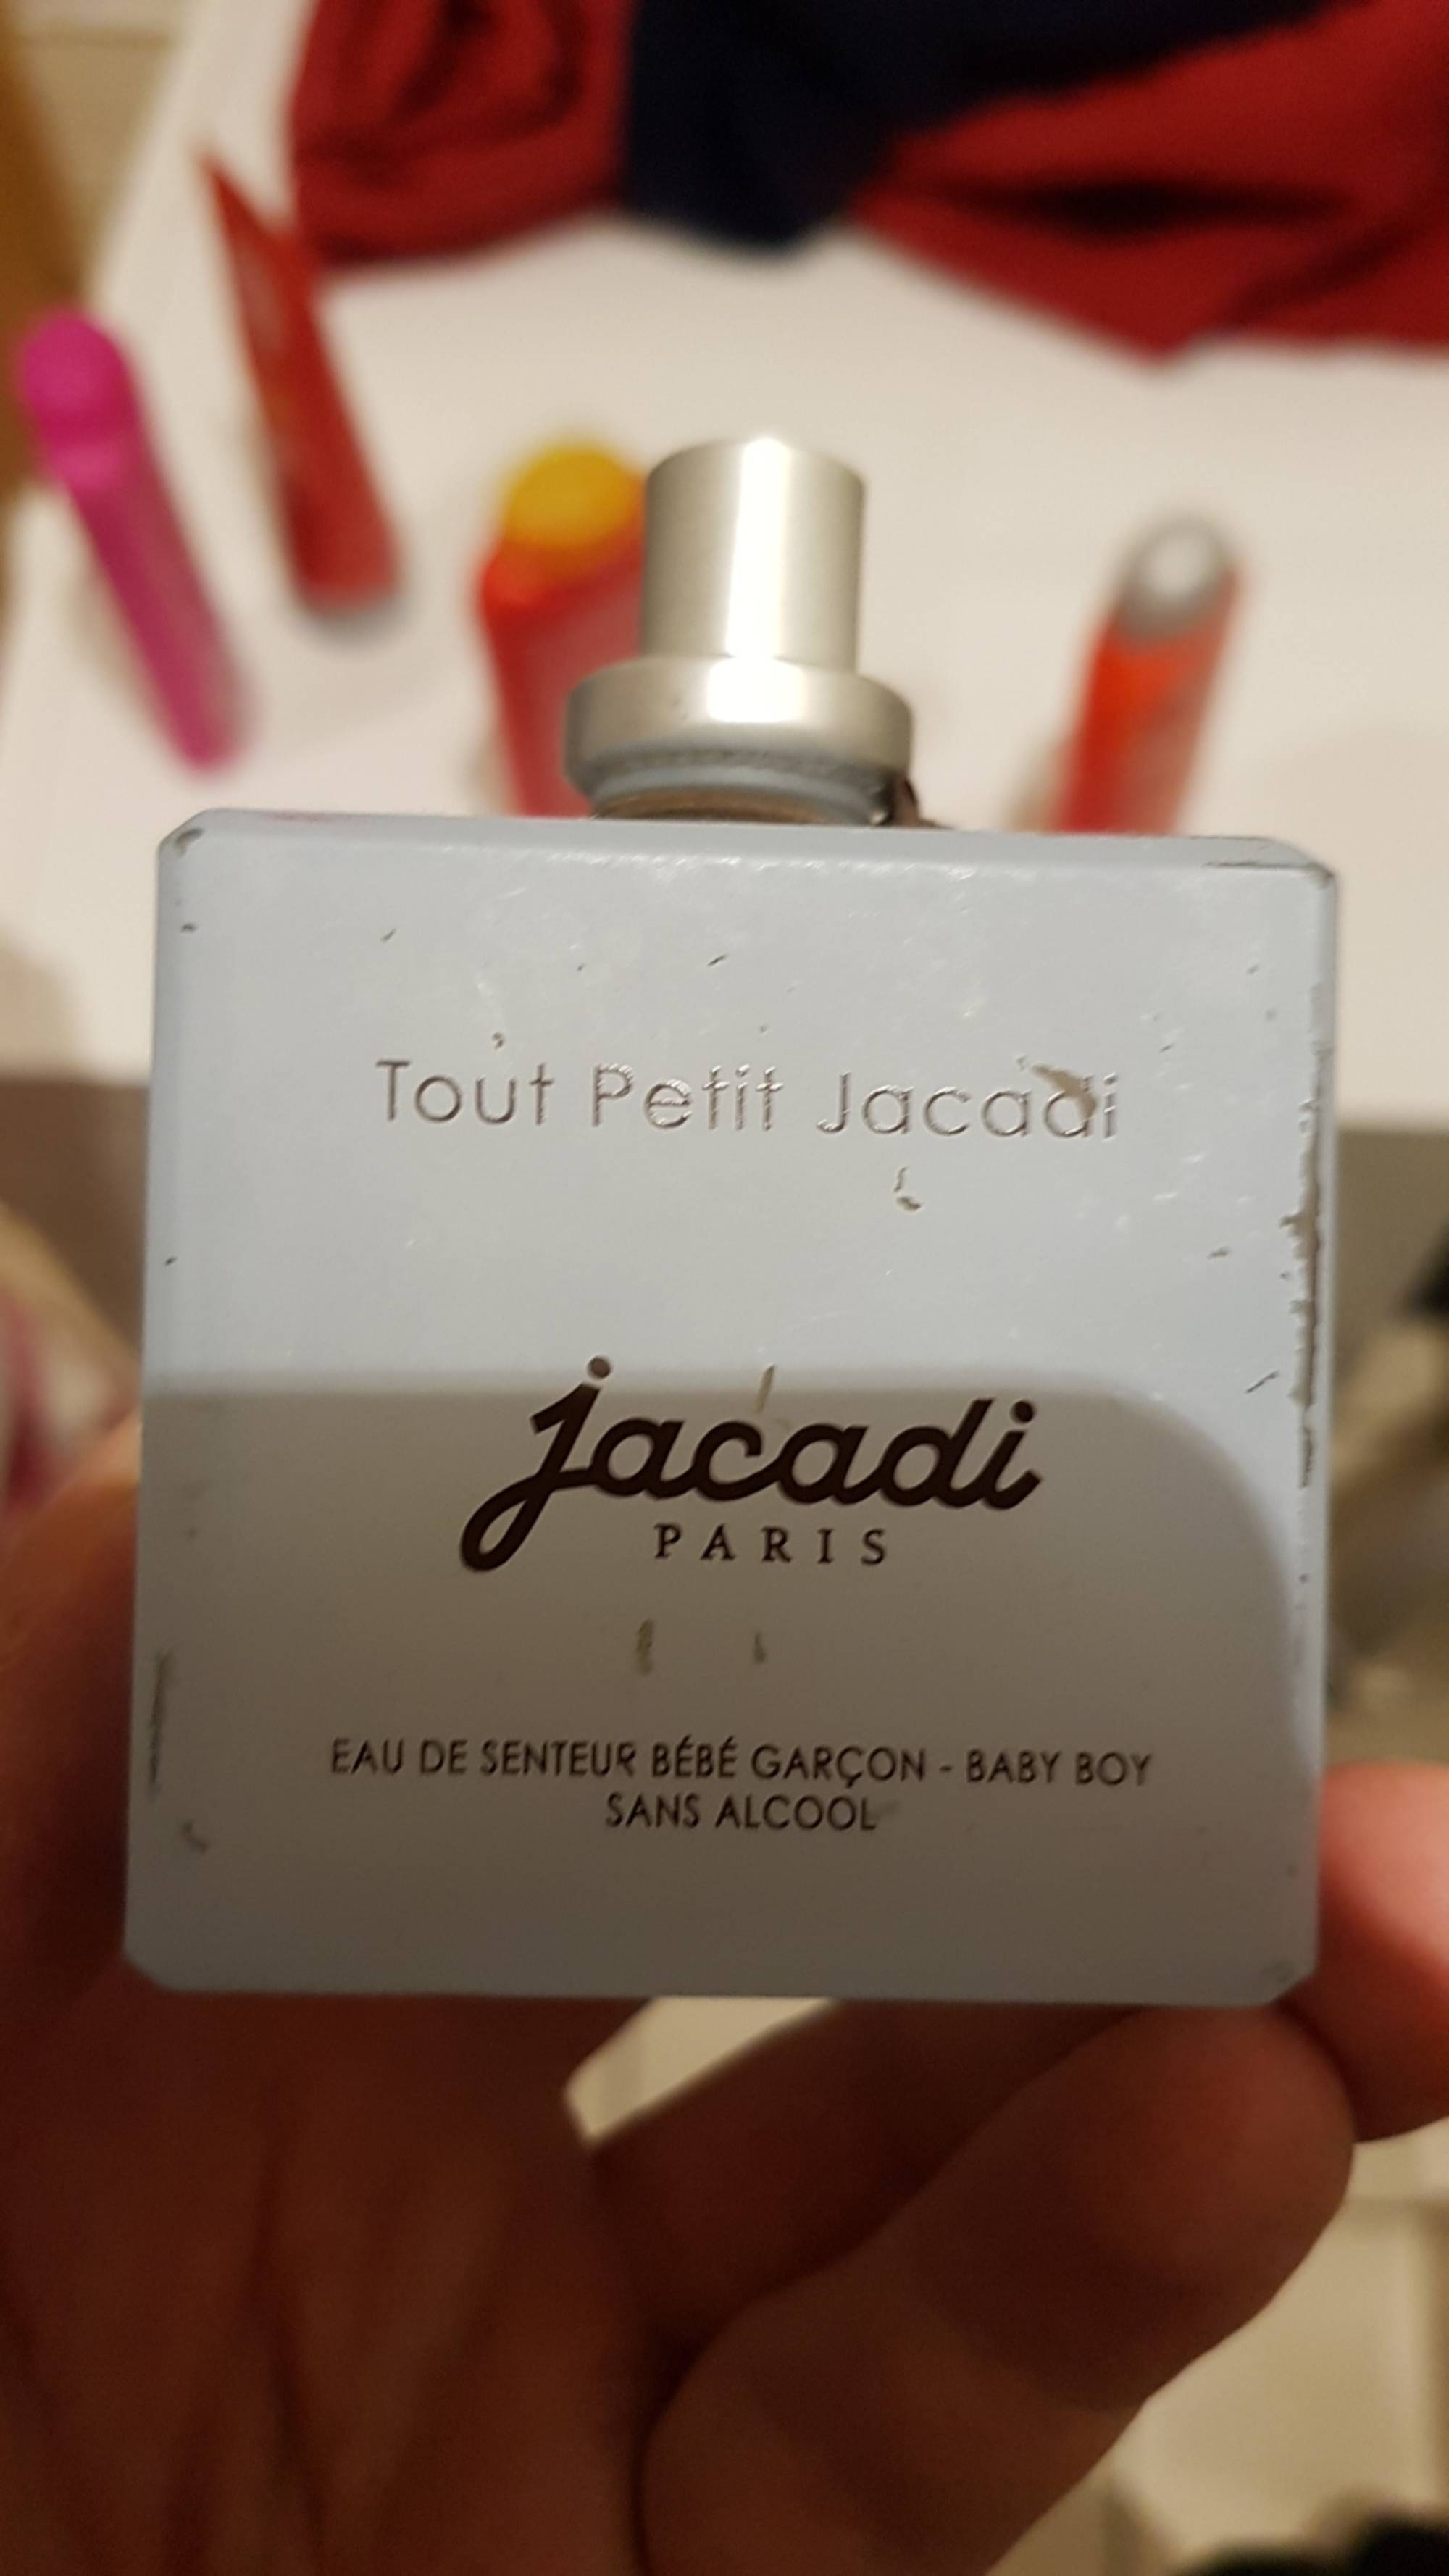 JACADI PARIS - Tout petit Jacadi - Eau de senteur bébé garçon